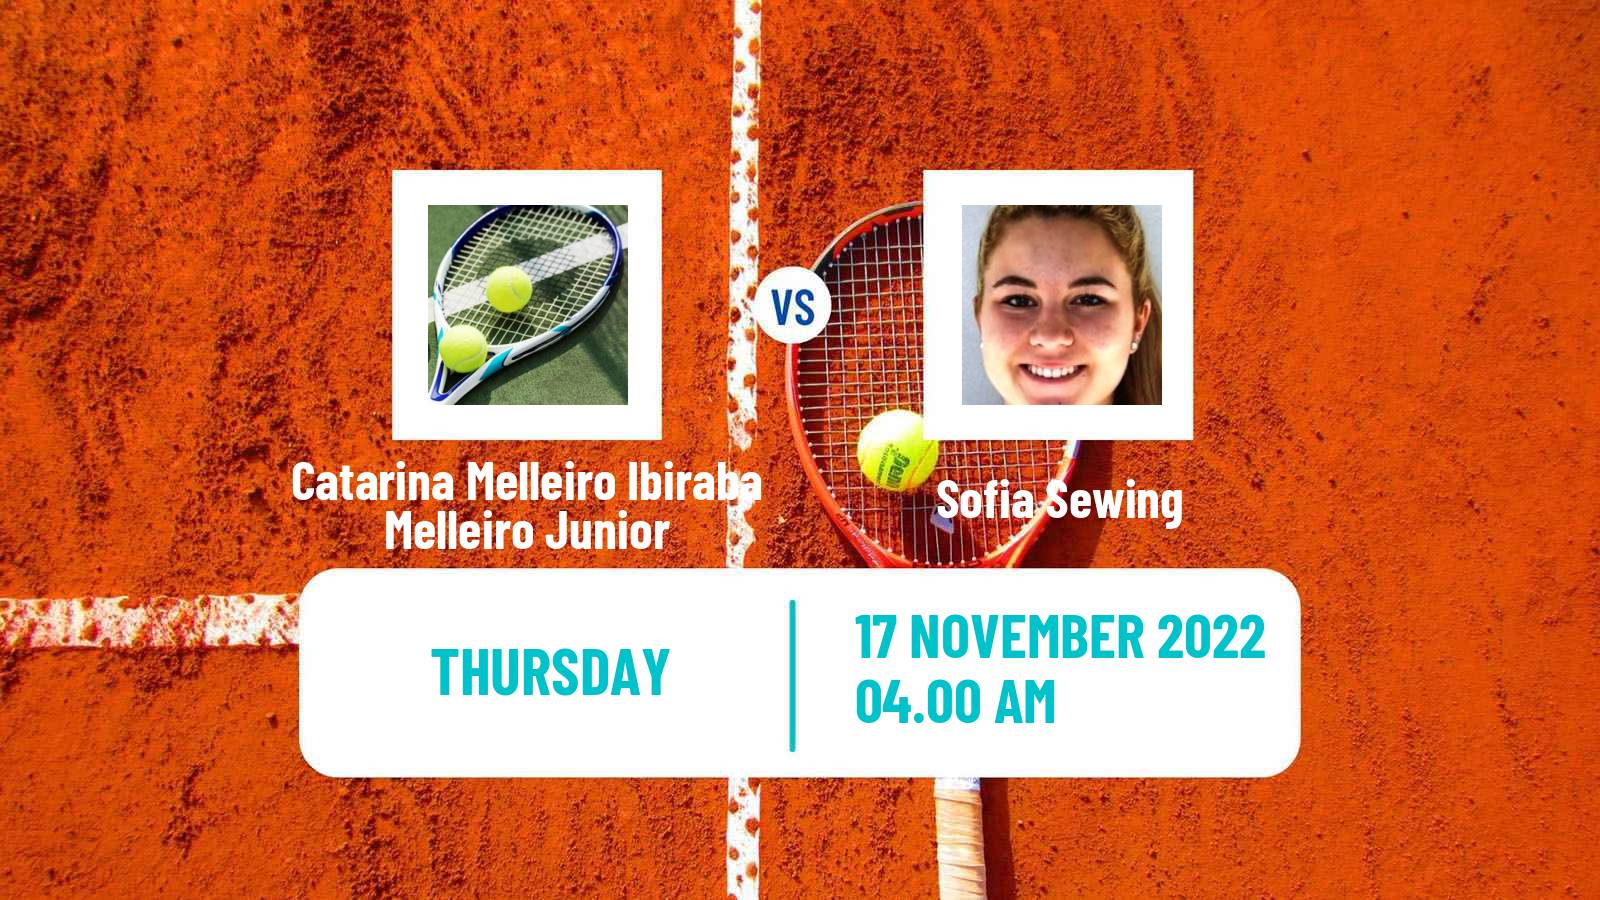 Tennis ITF Tournaments Catarina Melleiro Ibiraba Melleiro Junior - Sofia Sewing